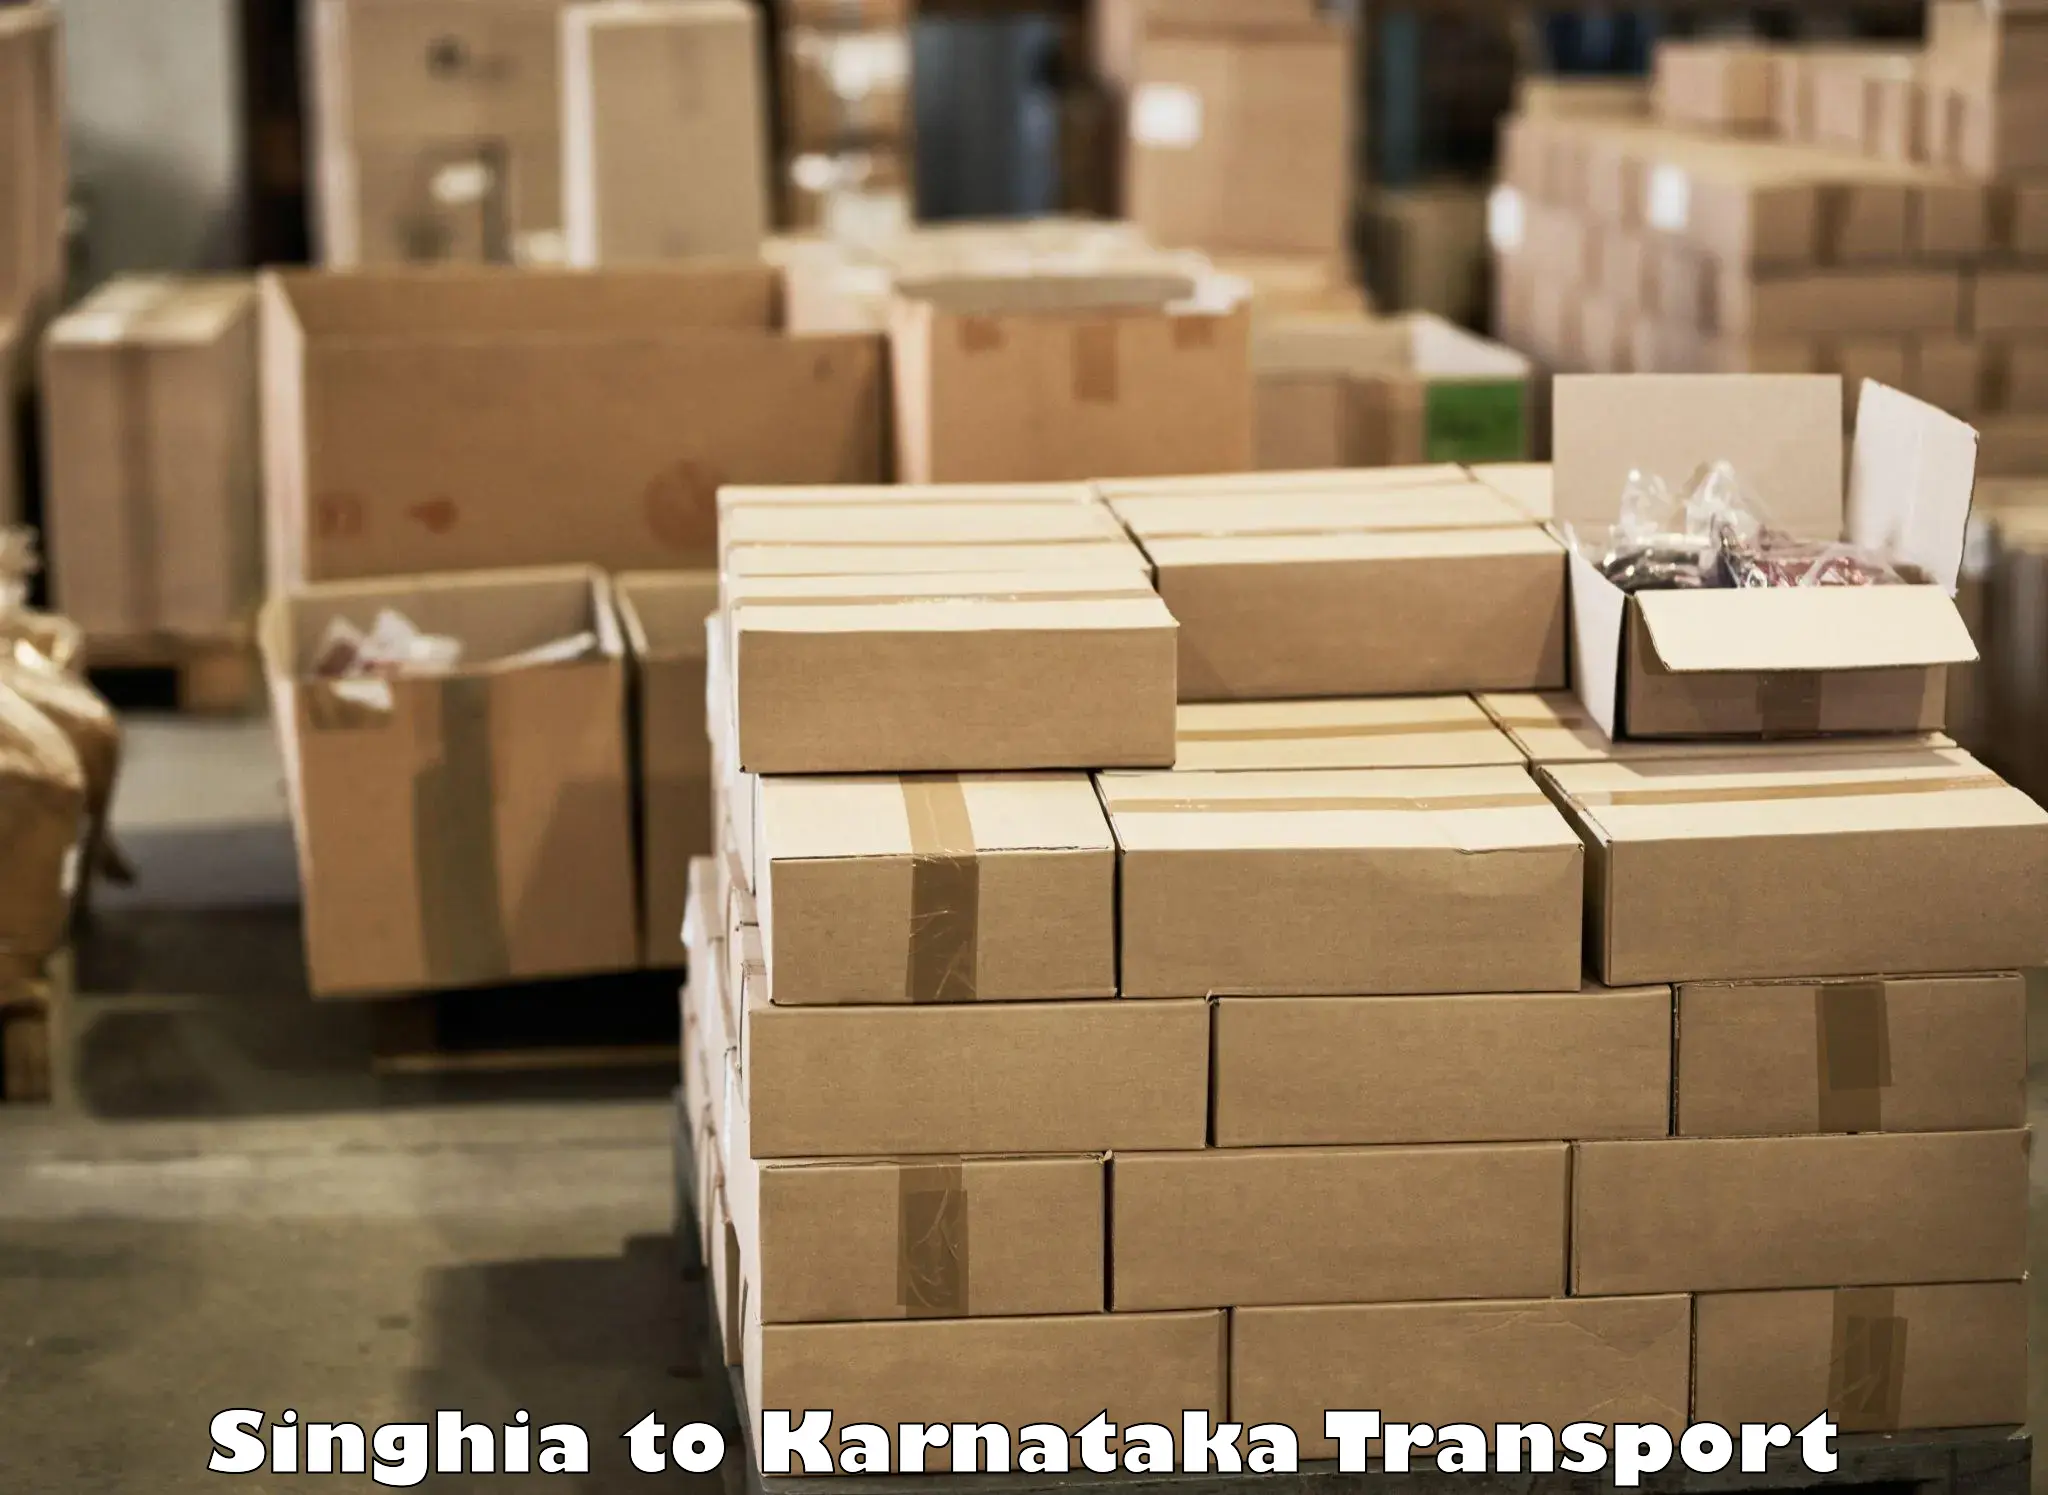 Truck transport companies in India Singhia to Chikkanayakanahalli